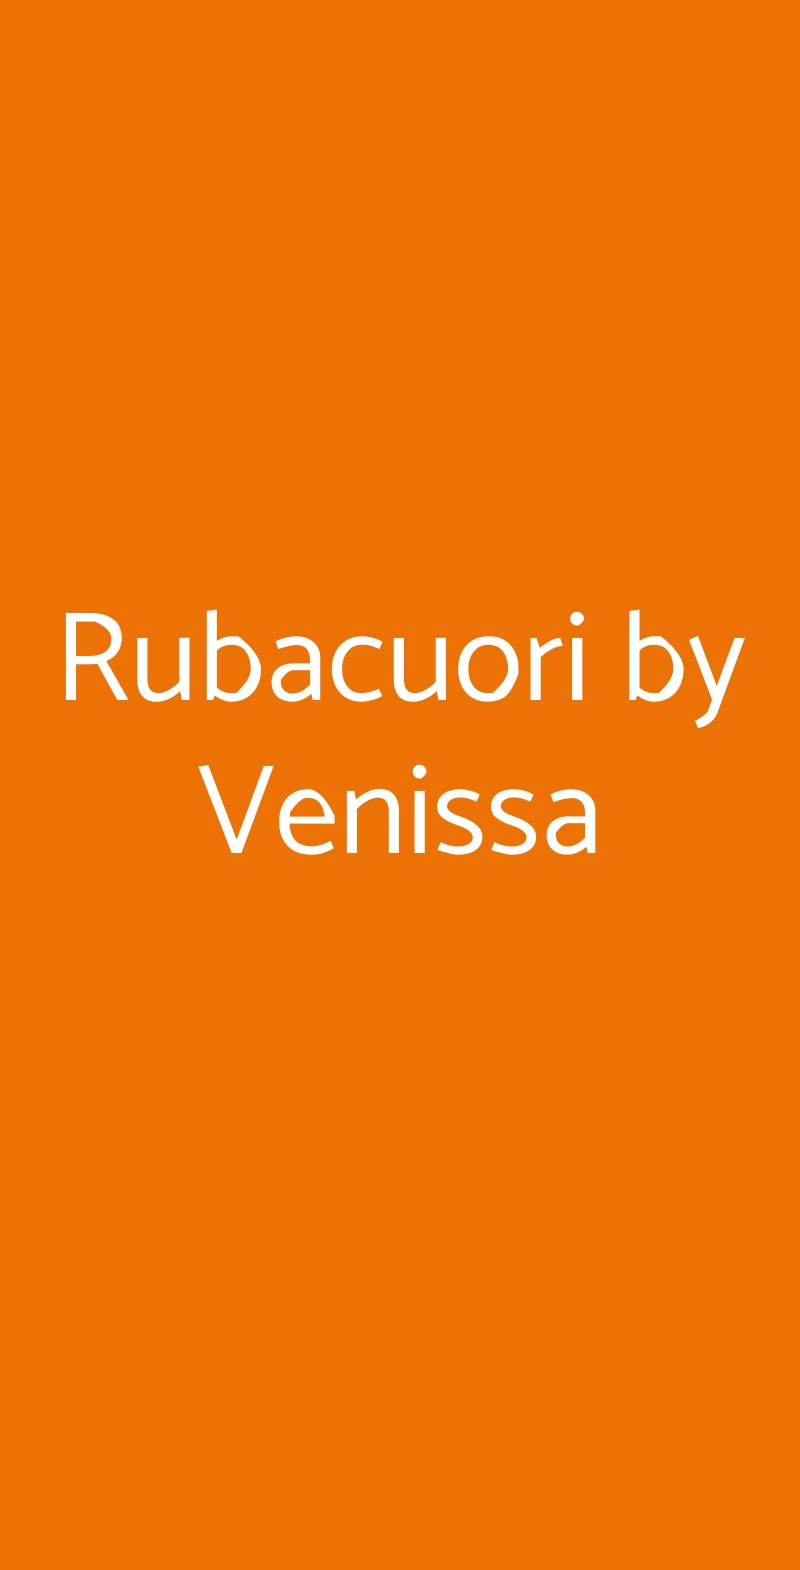 Rubacuori by Venissa Milano menù 1 pagina